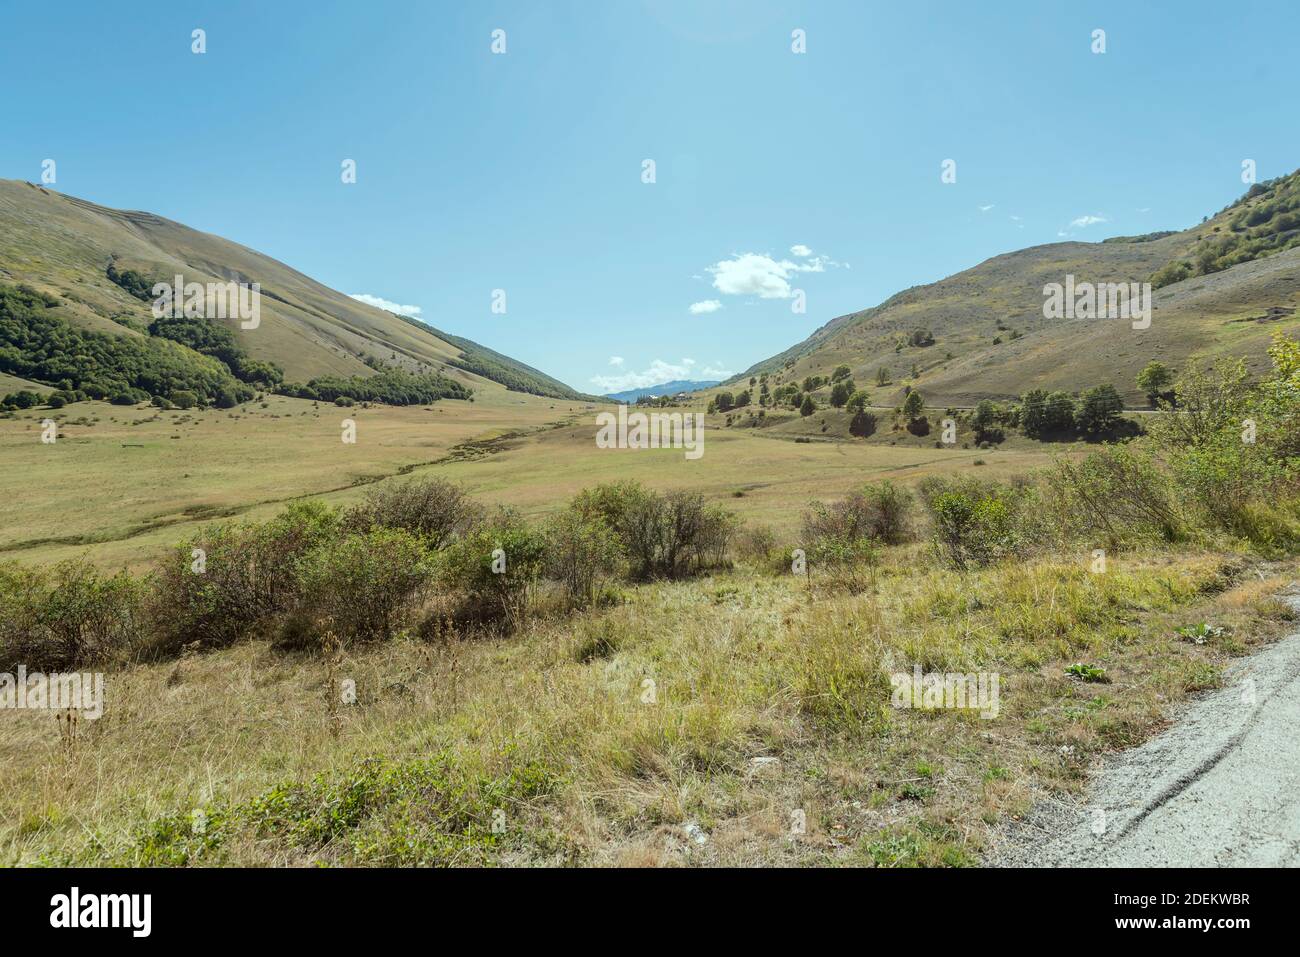 Paesaggio con prati e lievi pendii boscosi al gap appenninico, girato in luce intensa al passo di Godi, l'Aquila, Abruzzo, Italia Foto Stock